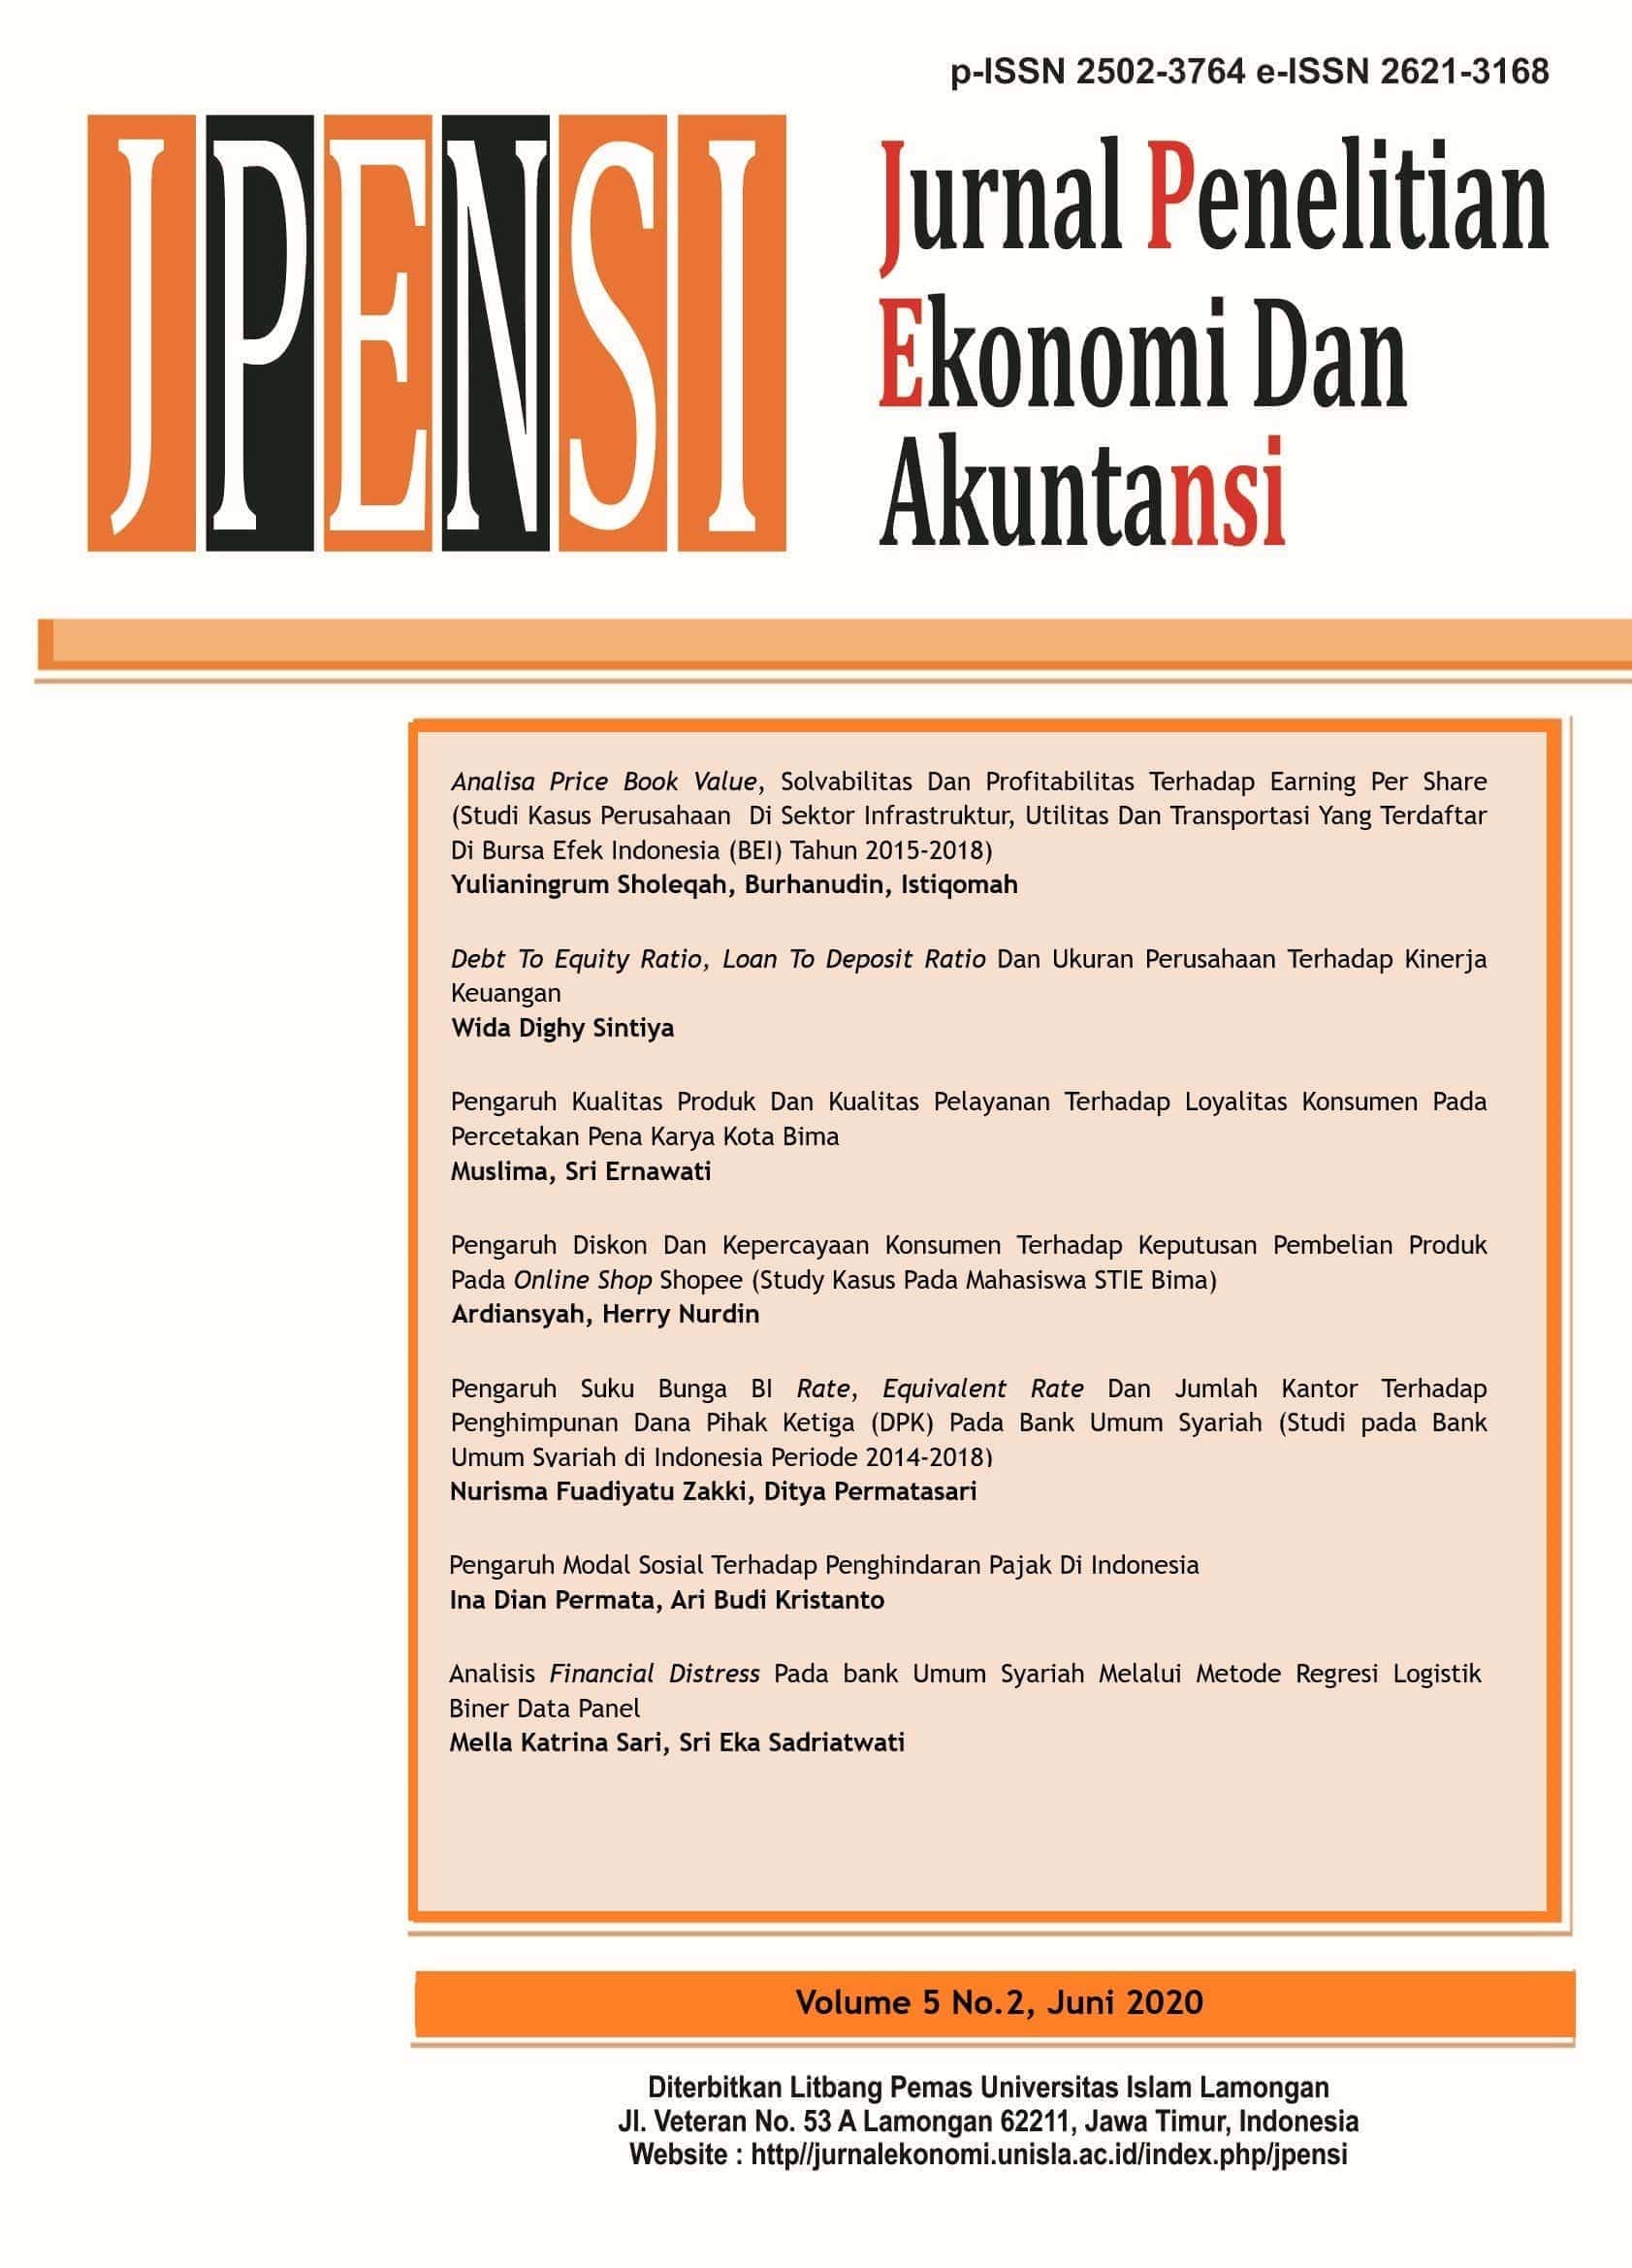 					View Vol. 5 No. 3 (2020): JURNAL PENELITIAN EKONOMI DAN AKUNTANSI (JPENSI)
				